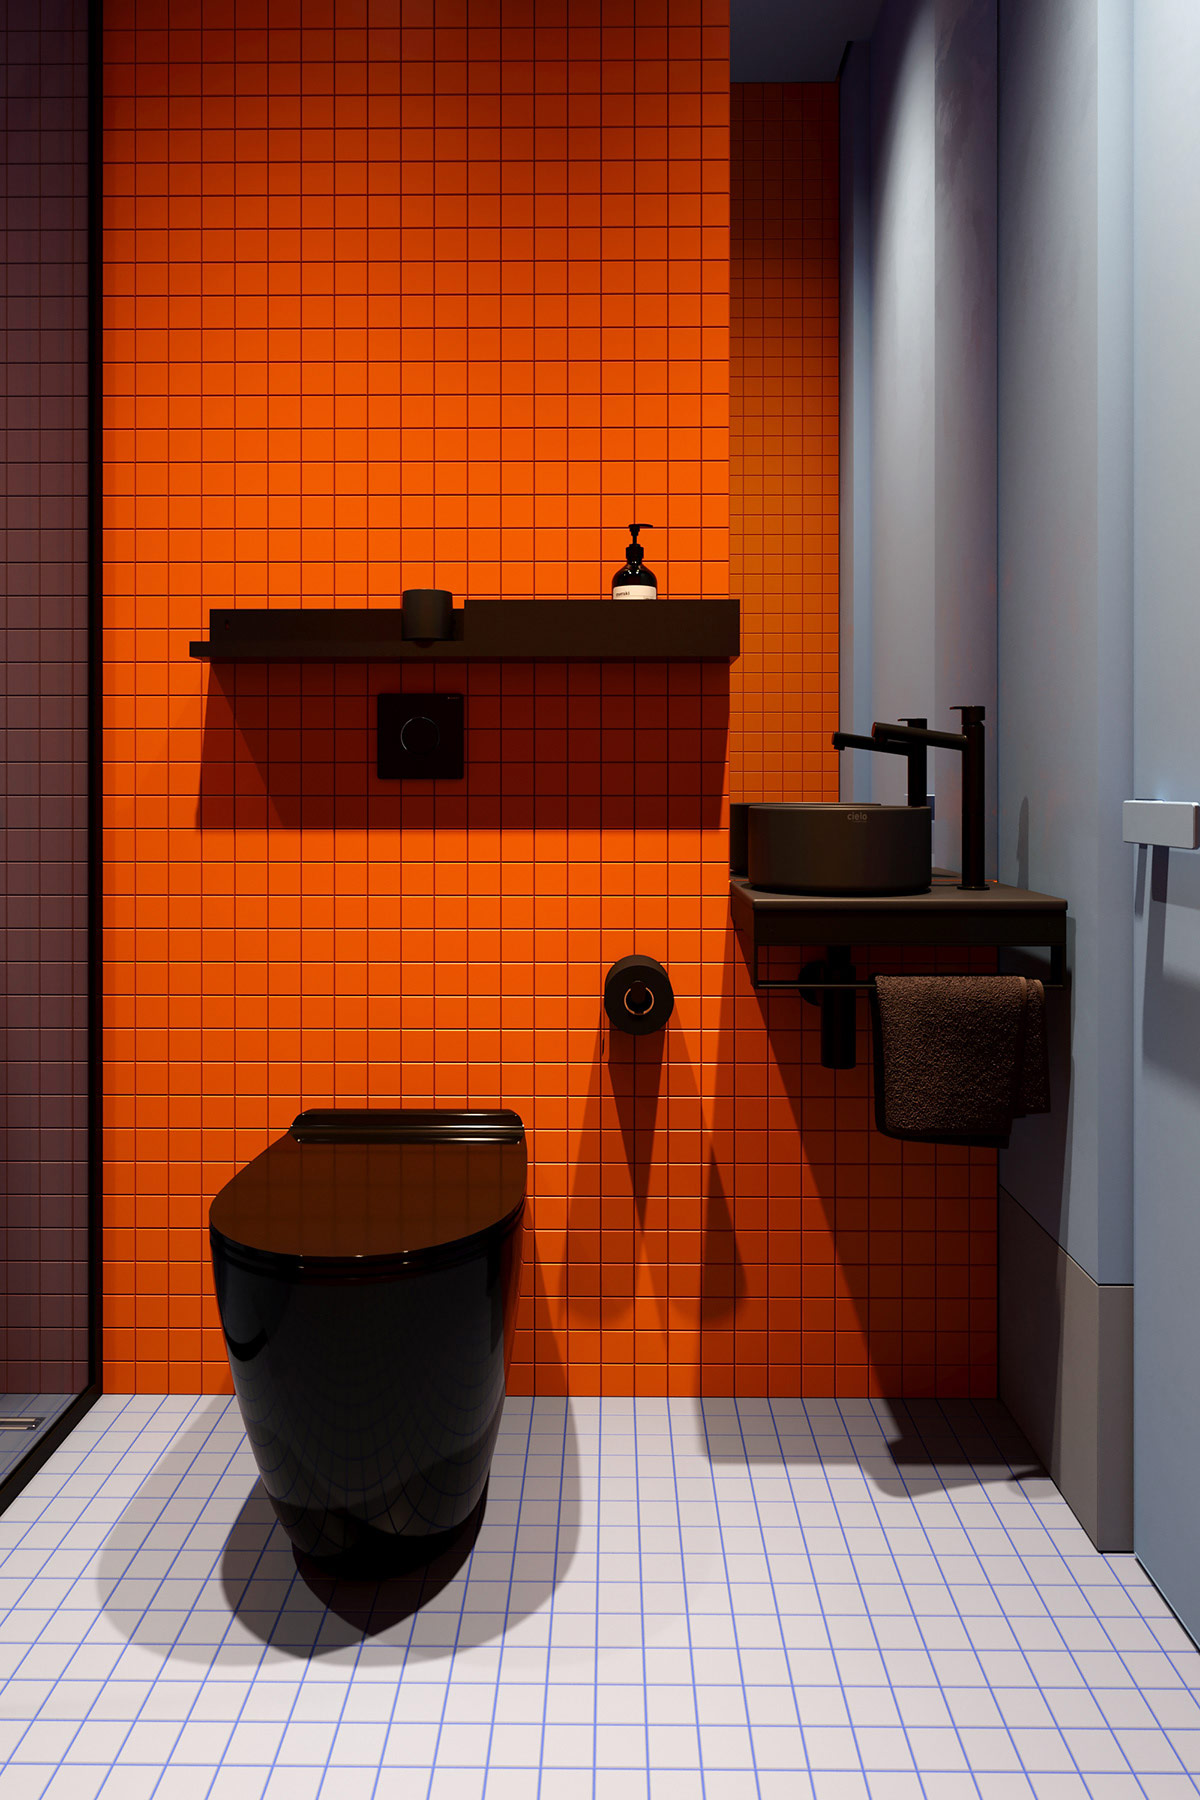 Nội thất nhà vệ sinh sử dụng gam màu đen tuyền cho cảm giác bí ẩn và tạo chiều sâu. Hơn nữa, màu đen cho bồn toilet, bồn rửa, kệ mở gắn tường cũng dễ dàng vệ sinh và che vết bẩn hơn so với màu trắng quen thuộc.